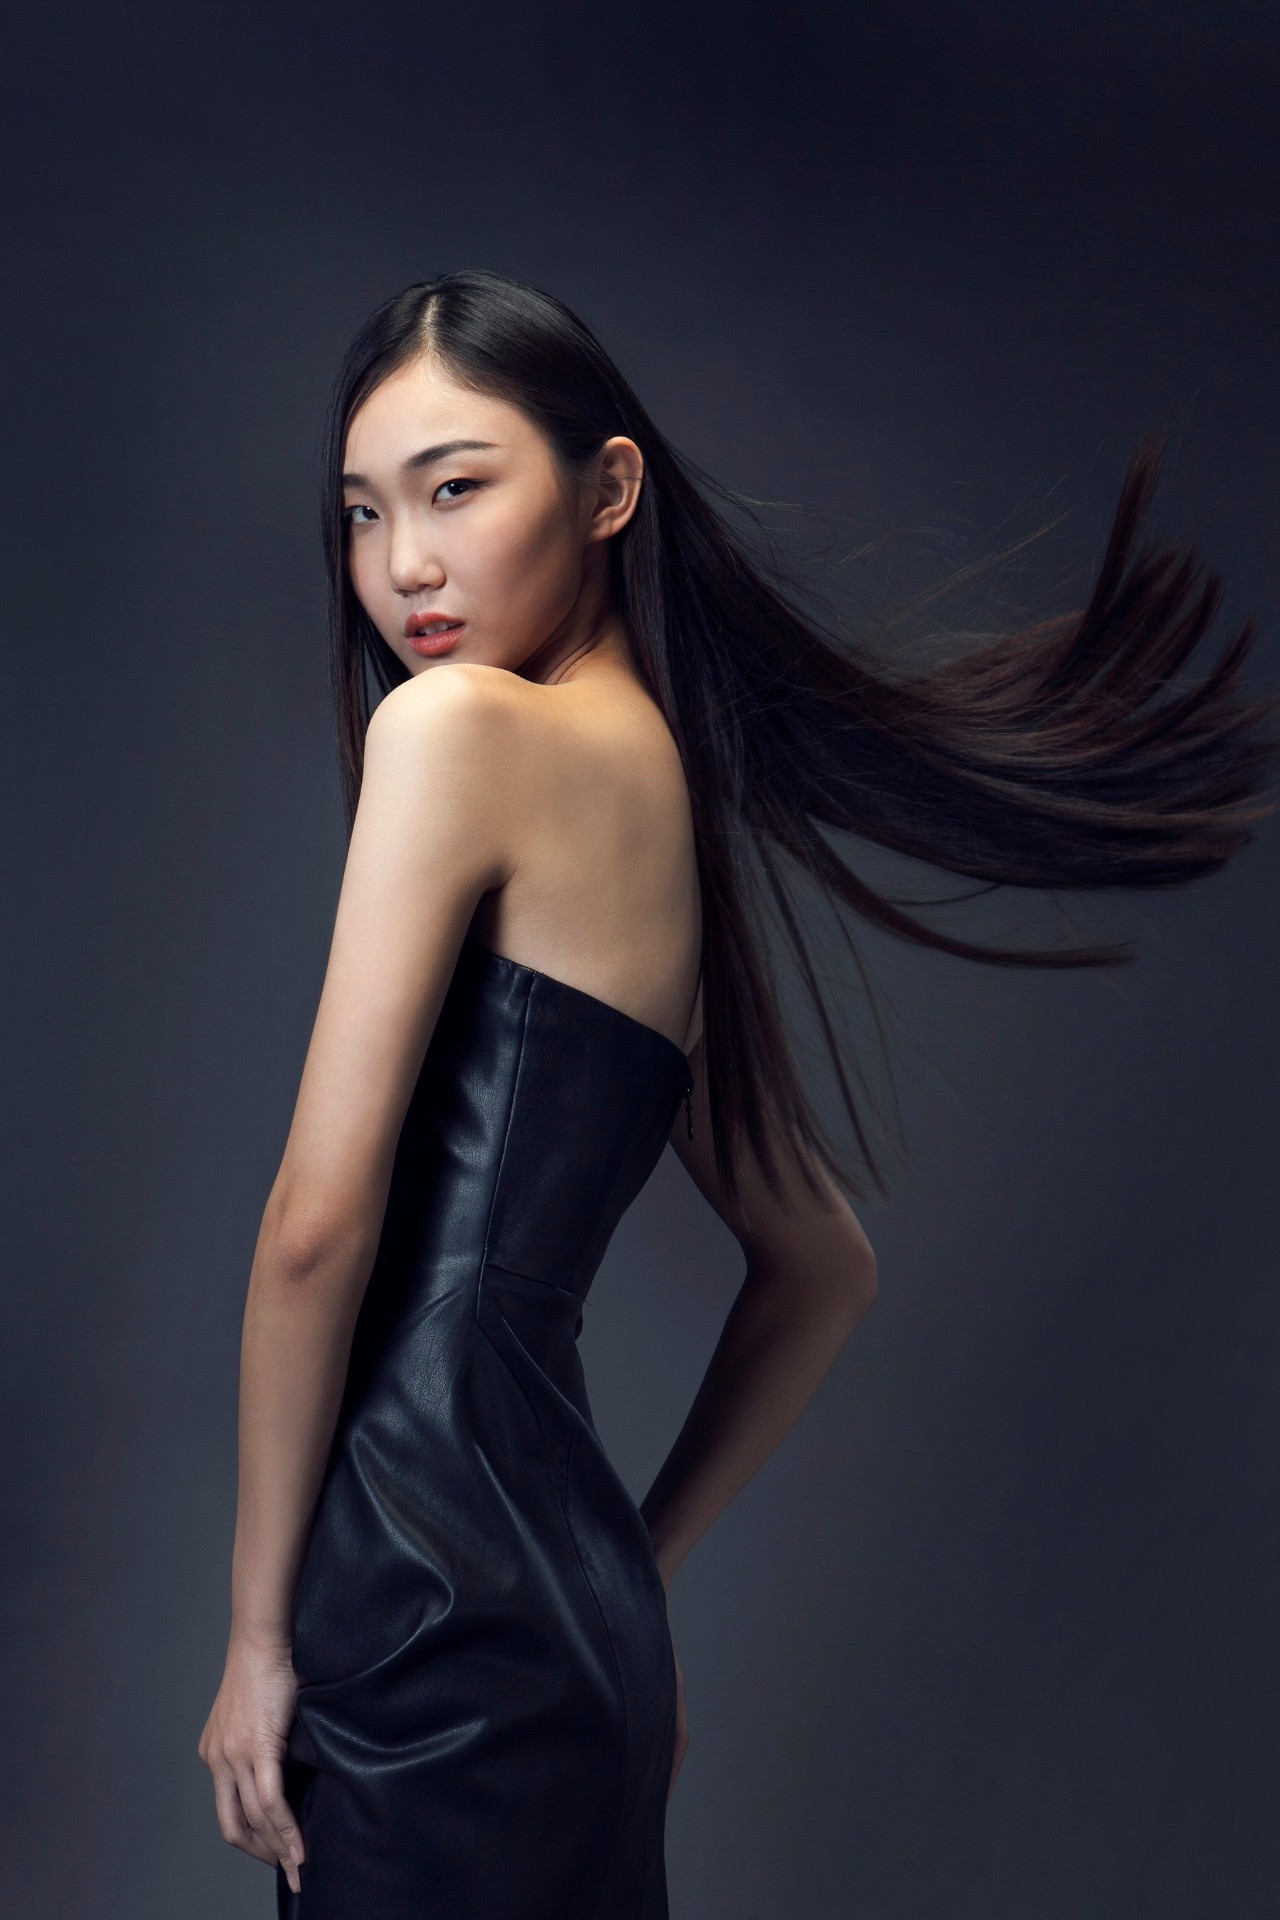 「模特带你去看秀」中国国际时装周现场直击,esee超模带你一起看